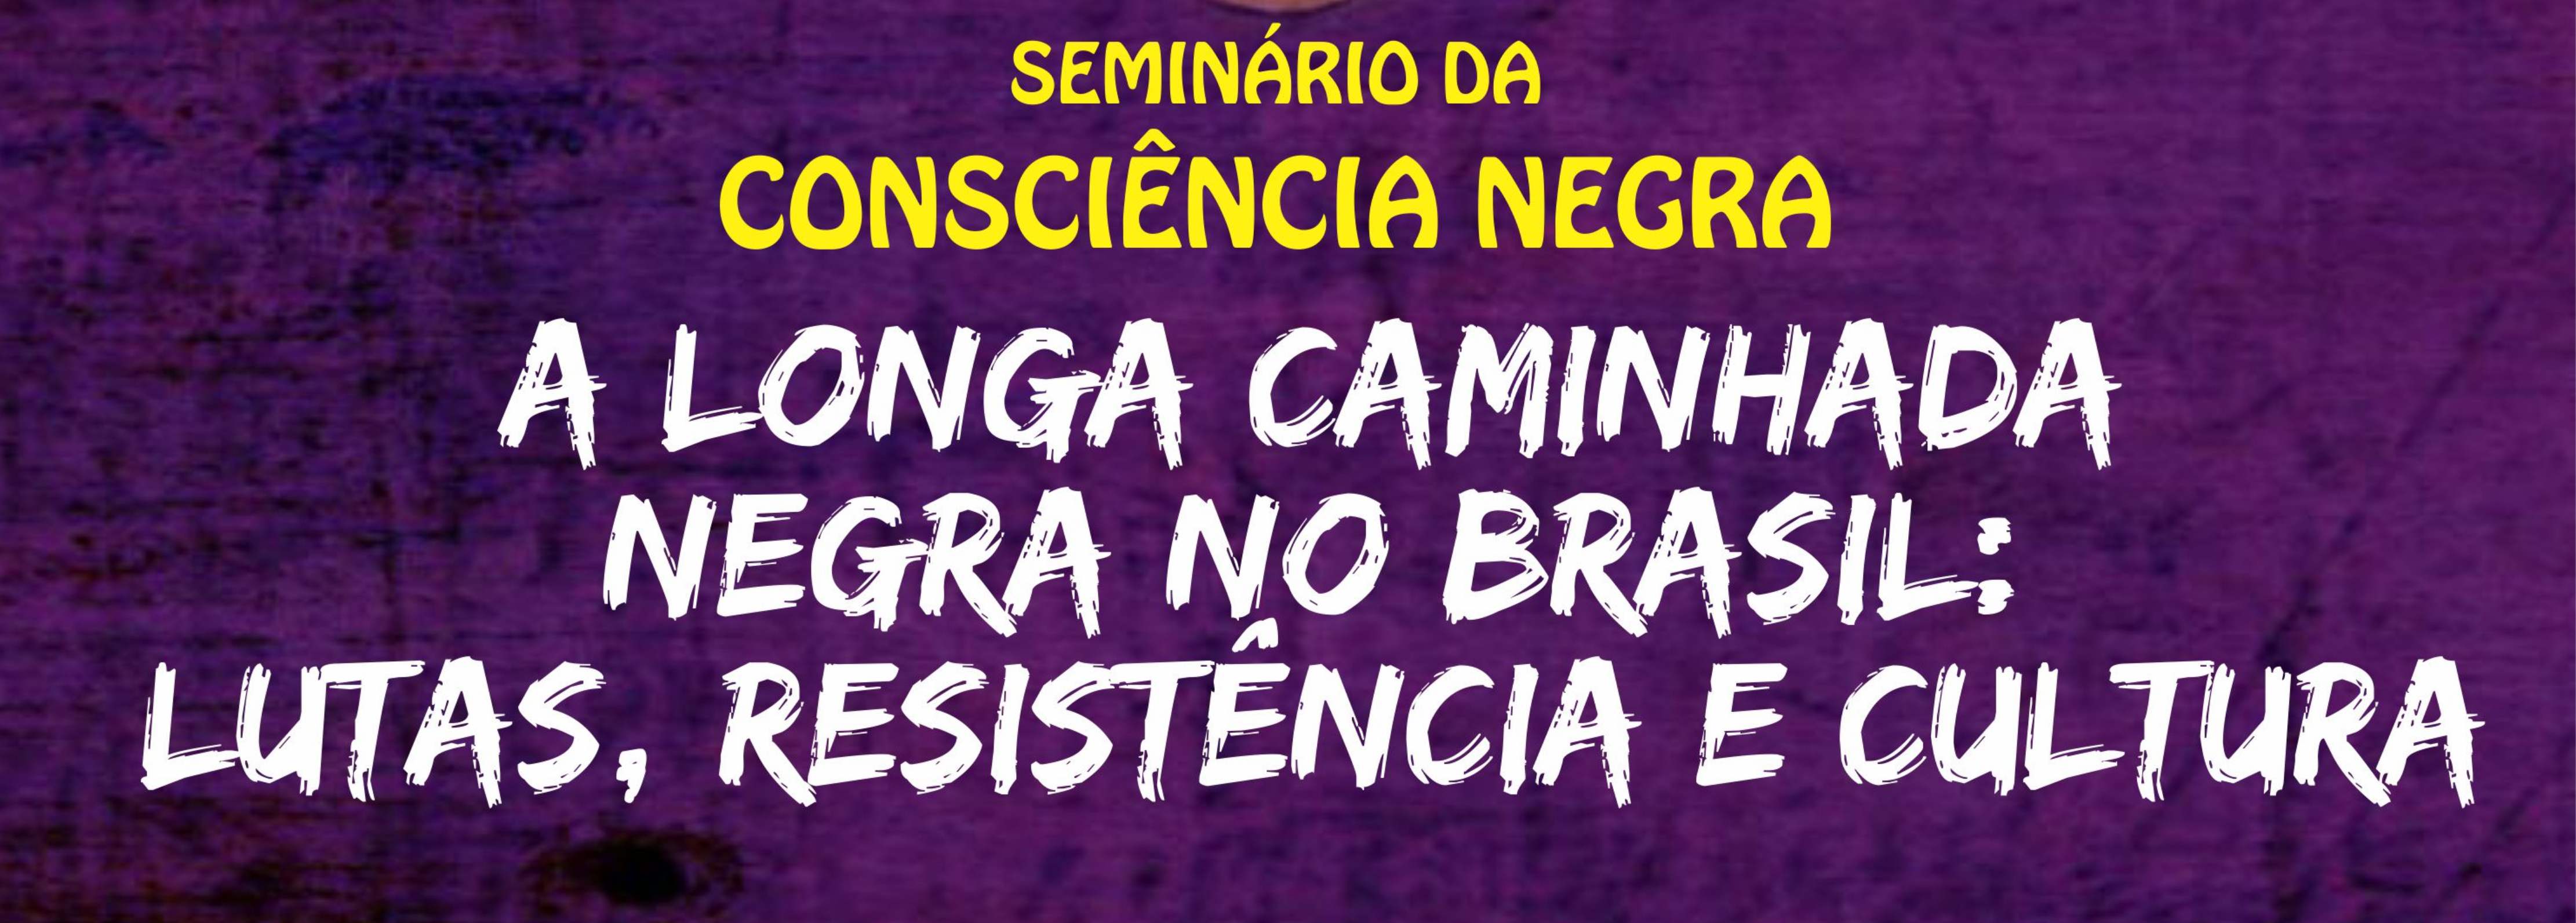 A longa caminhada negra no Brasil: lutas resistência e cultura